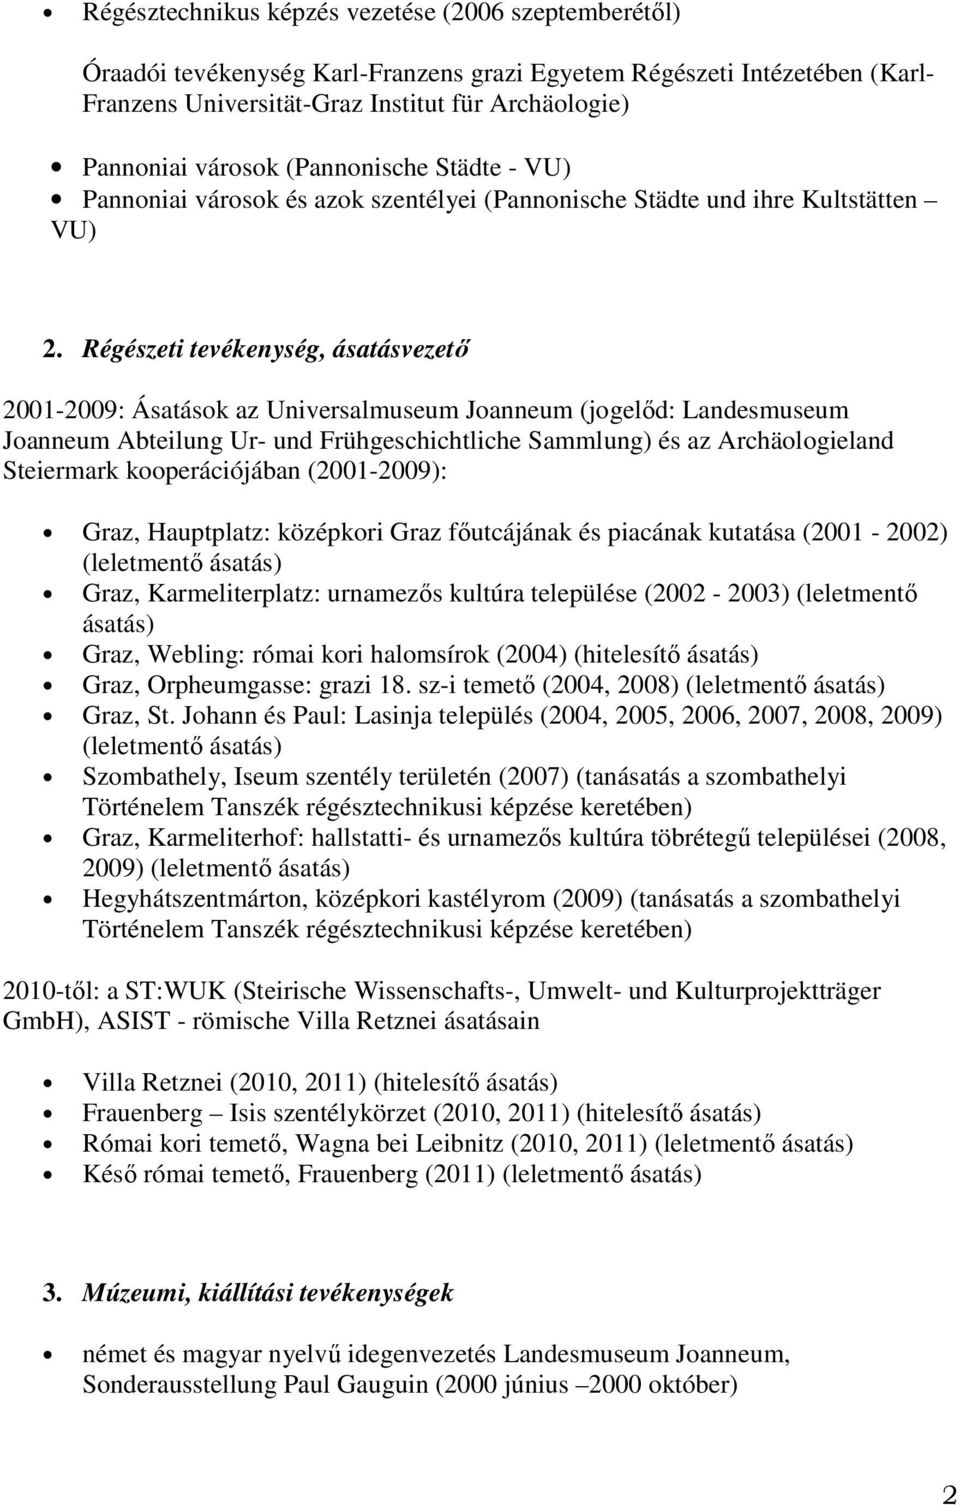 Régészeti tevékenység, ásatásvezető 2001-2009: Ásatások az Universalmuseum Joanneum (jogelőd: Landesmuseum Joanneum Abteilung Ur- und Frühgeschichtliche Sammlung) és az Archäologieland Steiermark